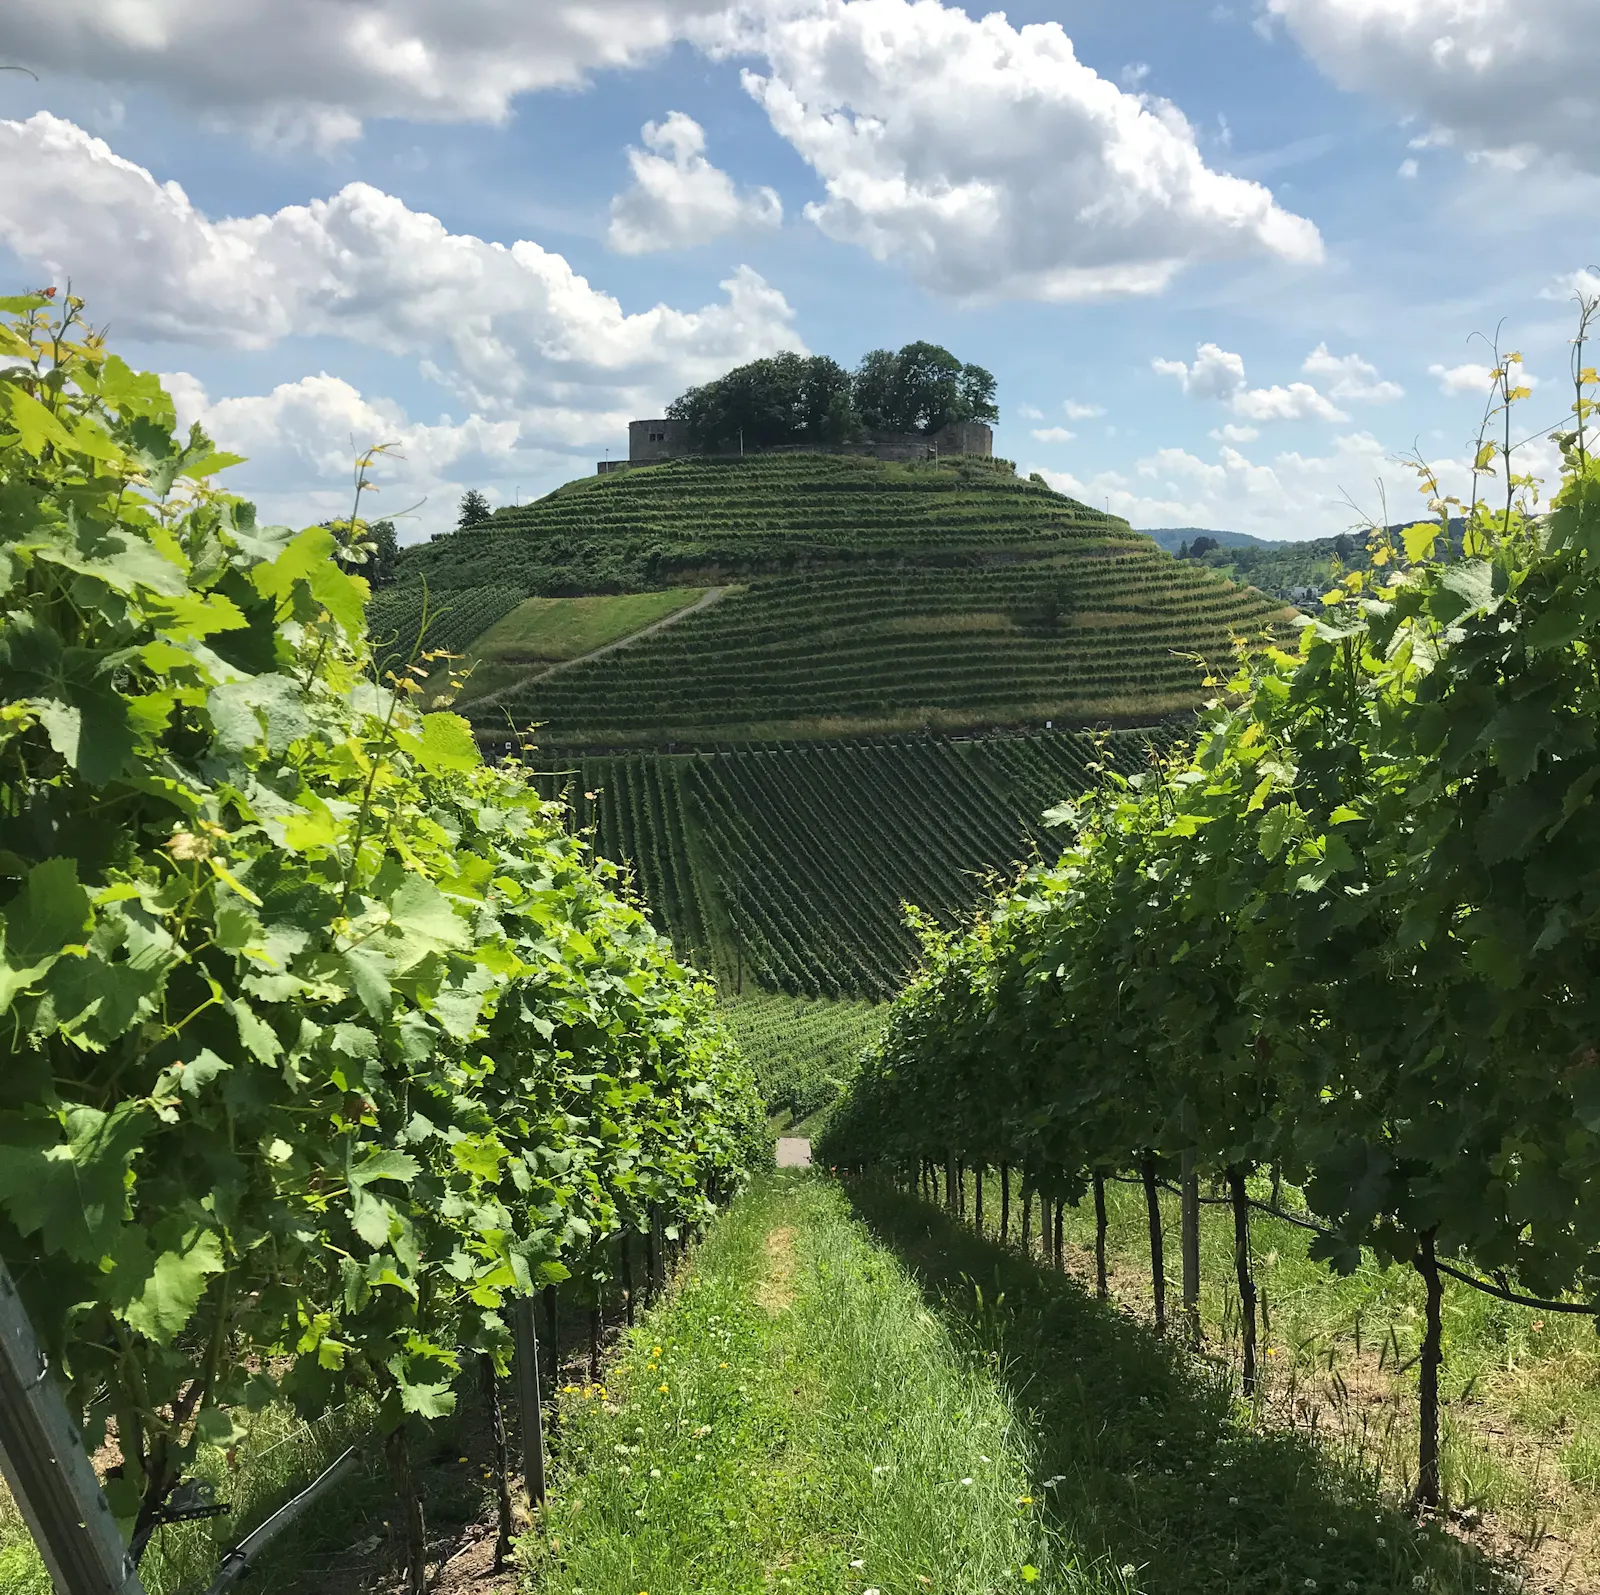 WeinLetter #68: Alles über koscheren Wein aus Deutschland - WeinLetter